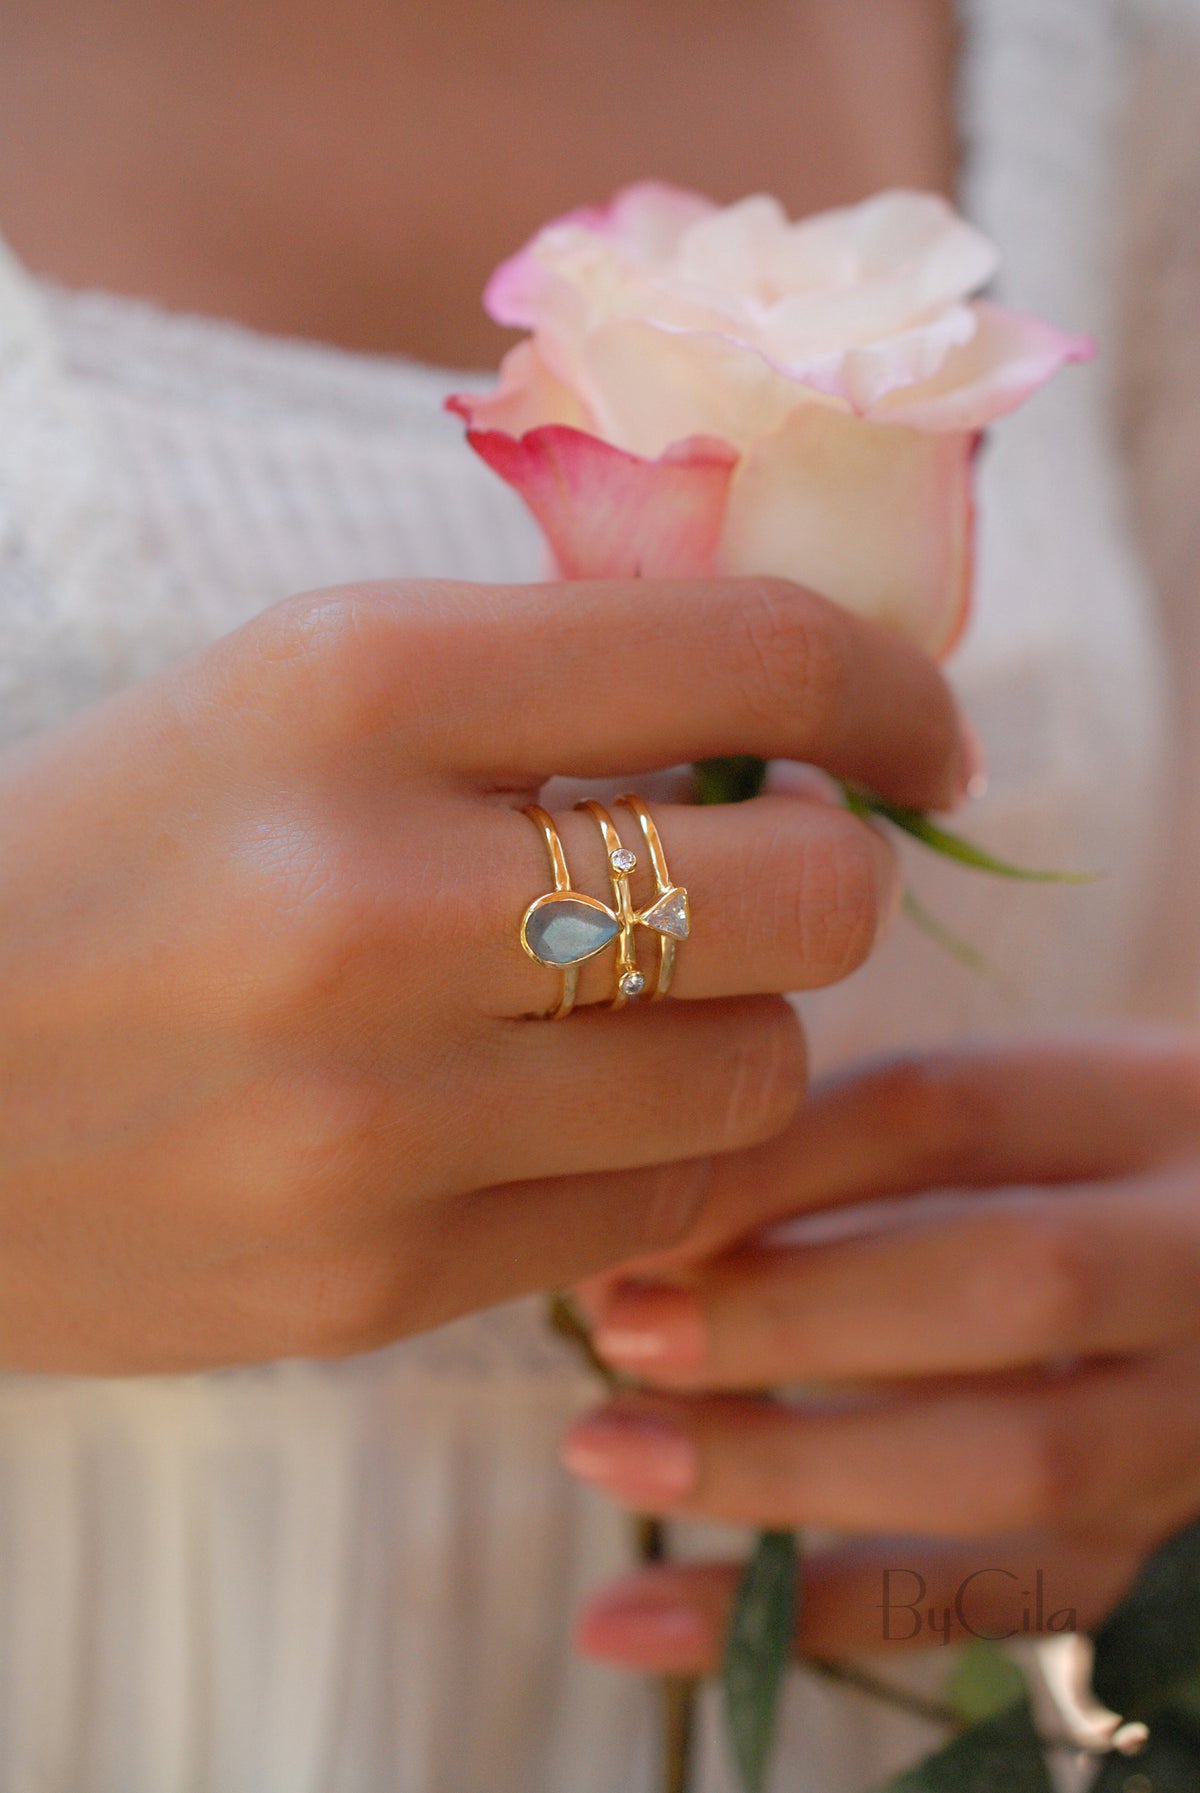 Labradorite & Clear Quartz Ring * Gold Plated Ring * Statement Ring *Gemstone Ring * Labradorite * Bridal Ring *Wedding Ring  * BJR117